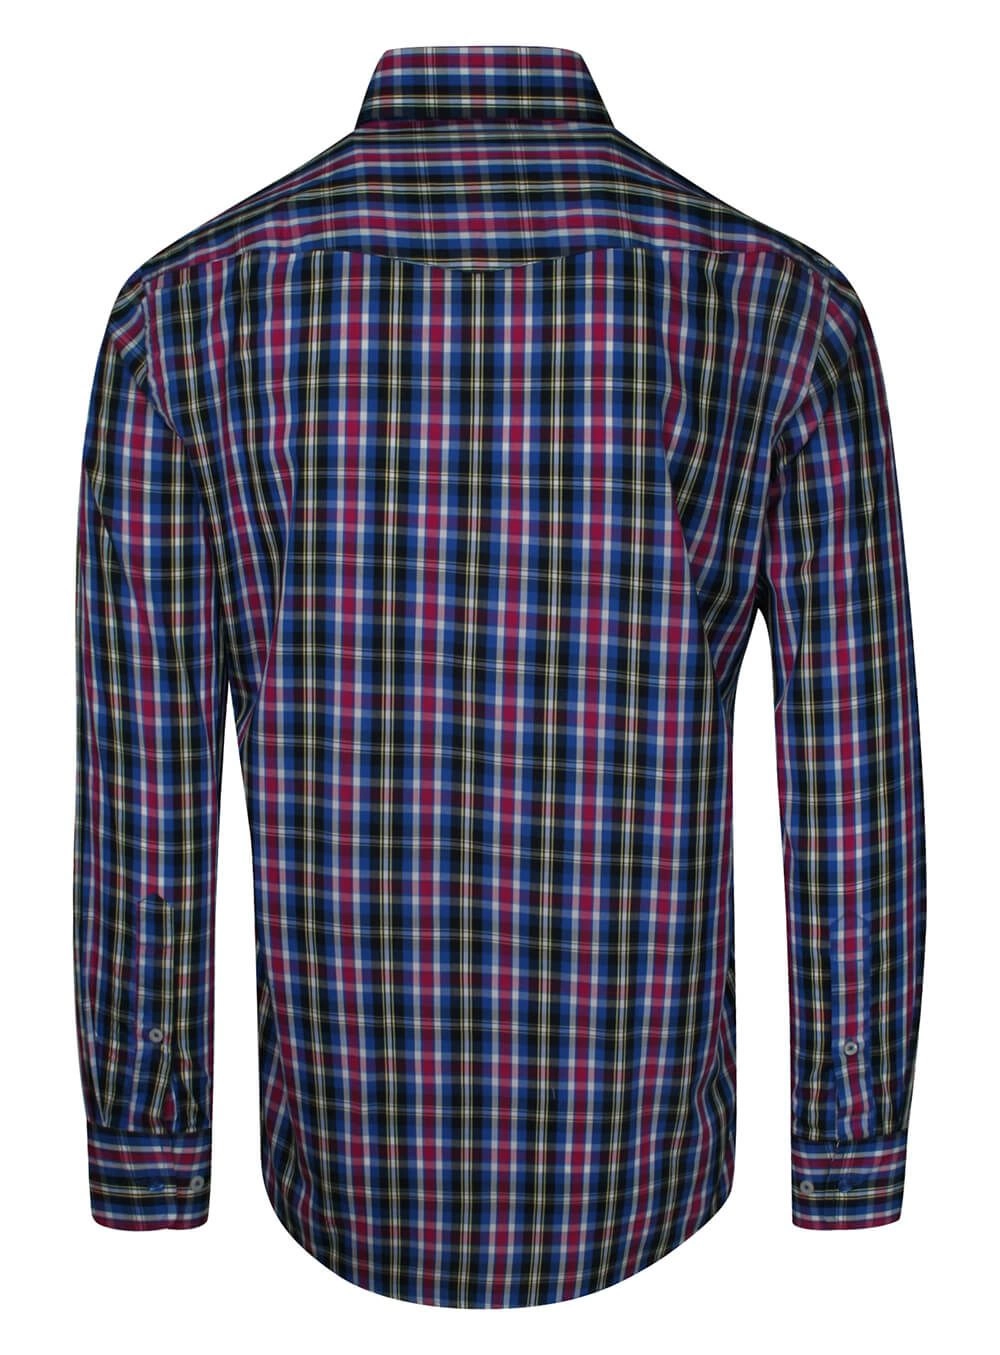 Koszula Męska, Chabrowo-Różowa w Kratkę, z Długim Rękawem, 100% Bawełna, Taliowana -CHIAO